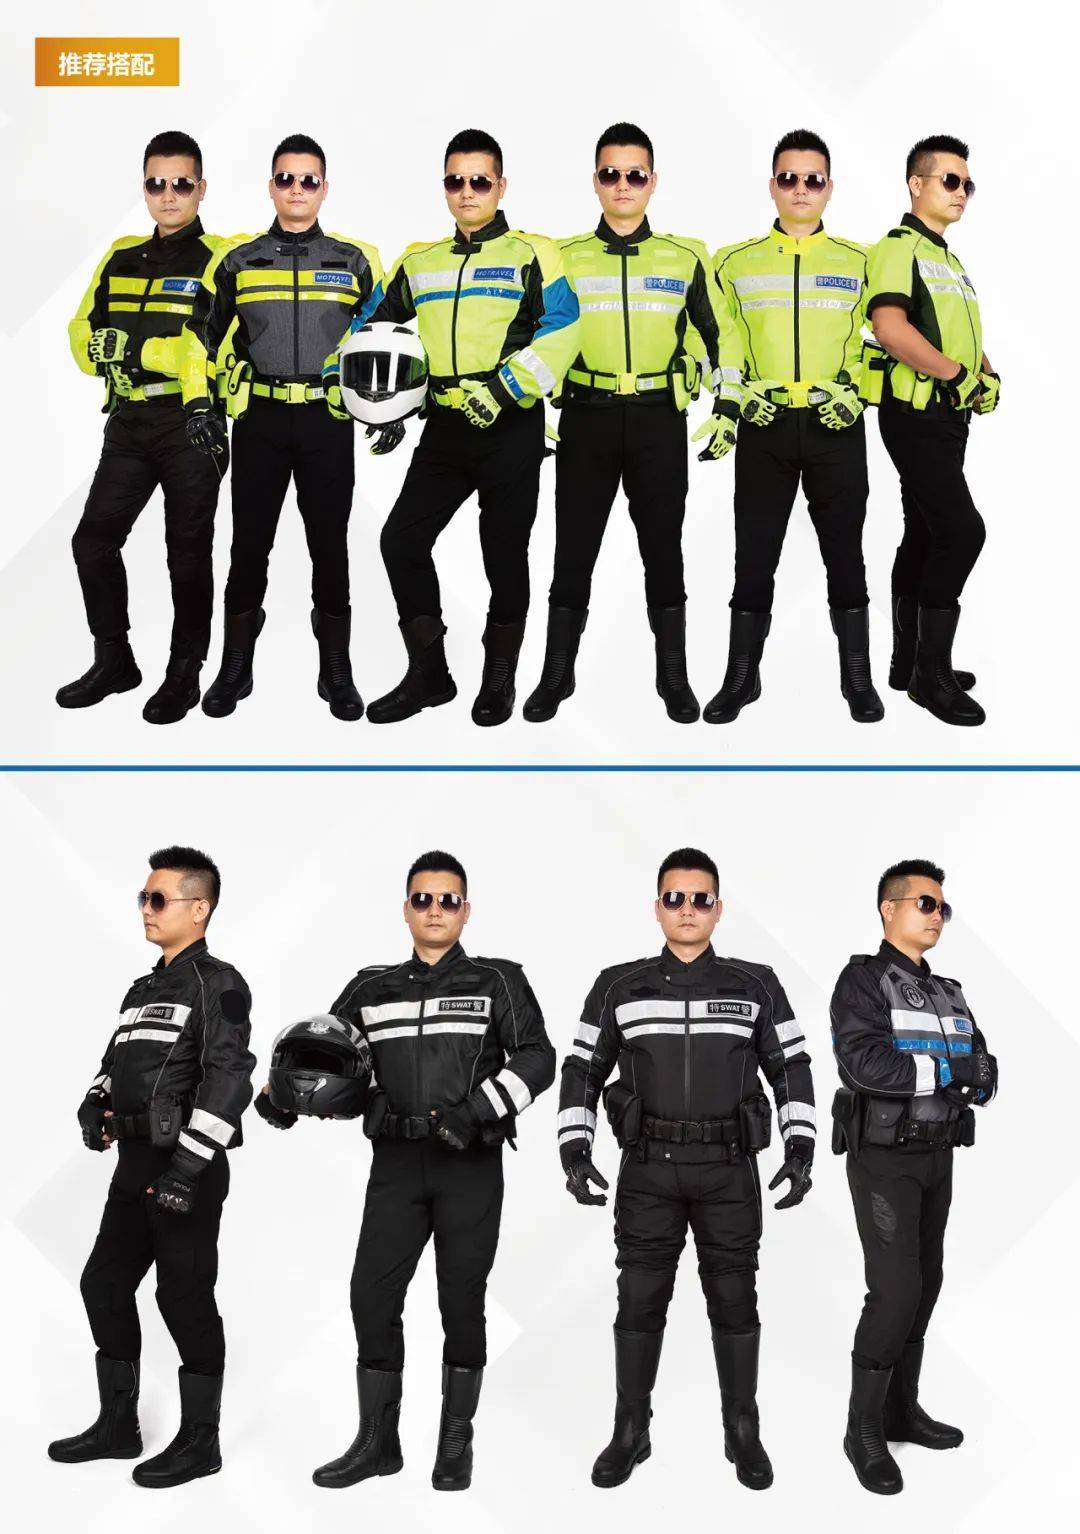 中国骑警警服(警用骑行服)套装一览